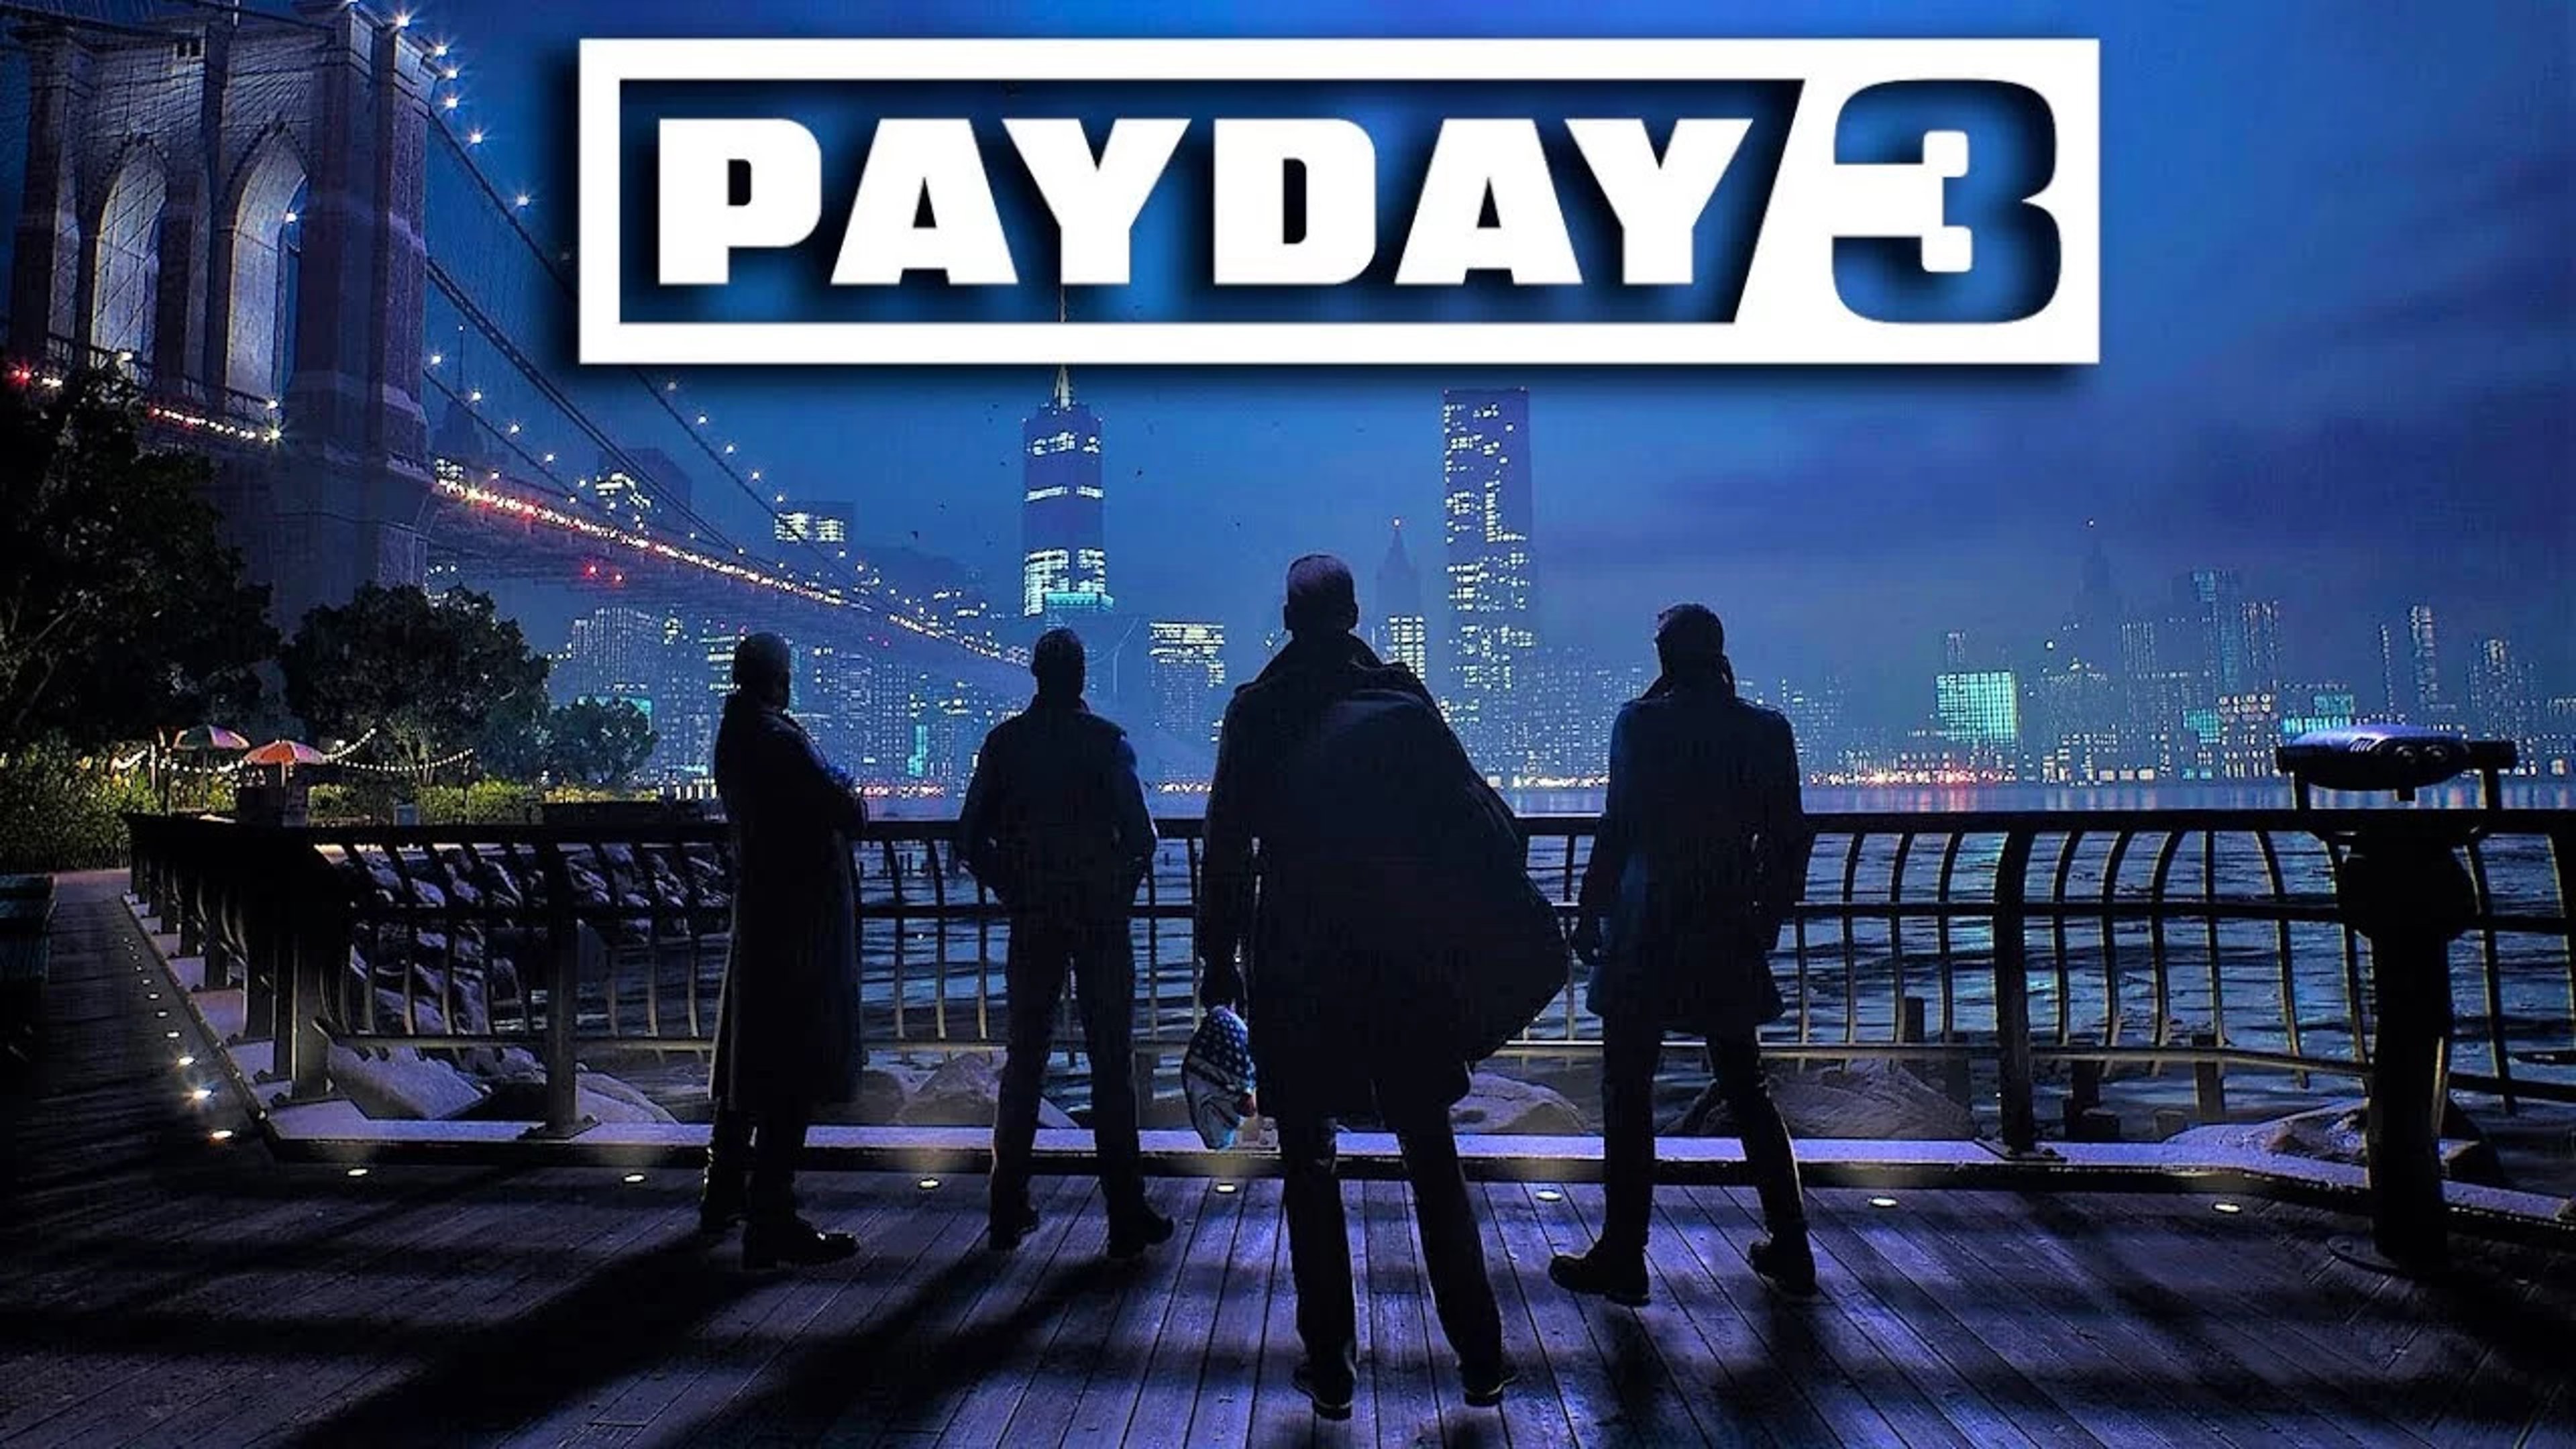 Payday 3, Recensione: il gioco di rapine più famoso è tornato